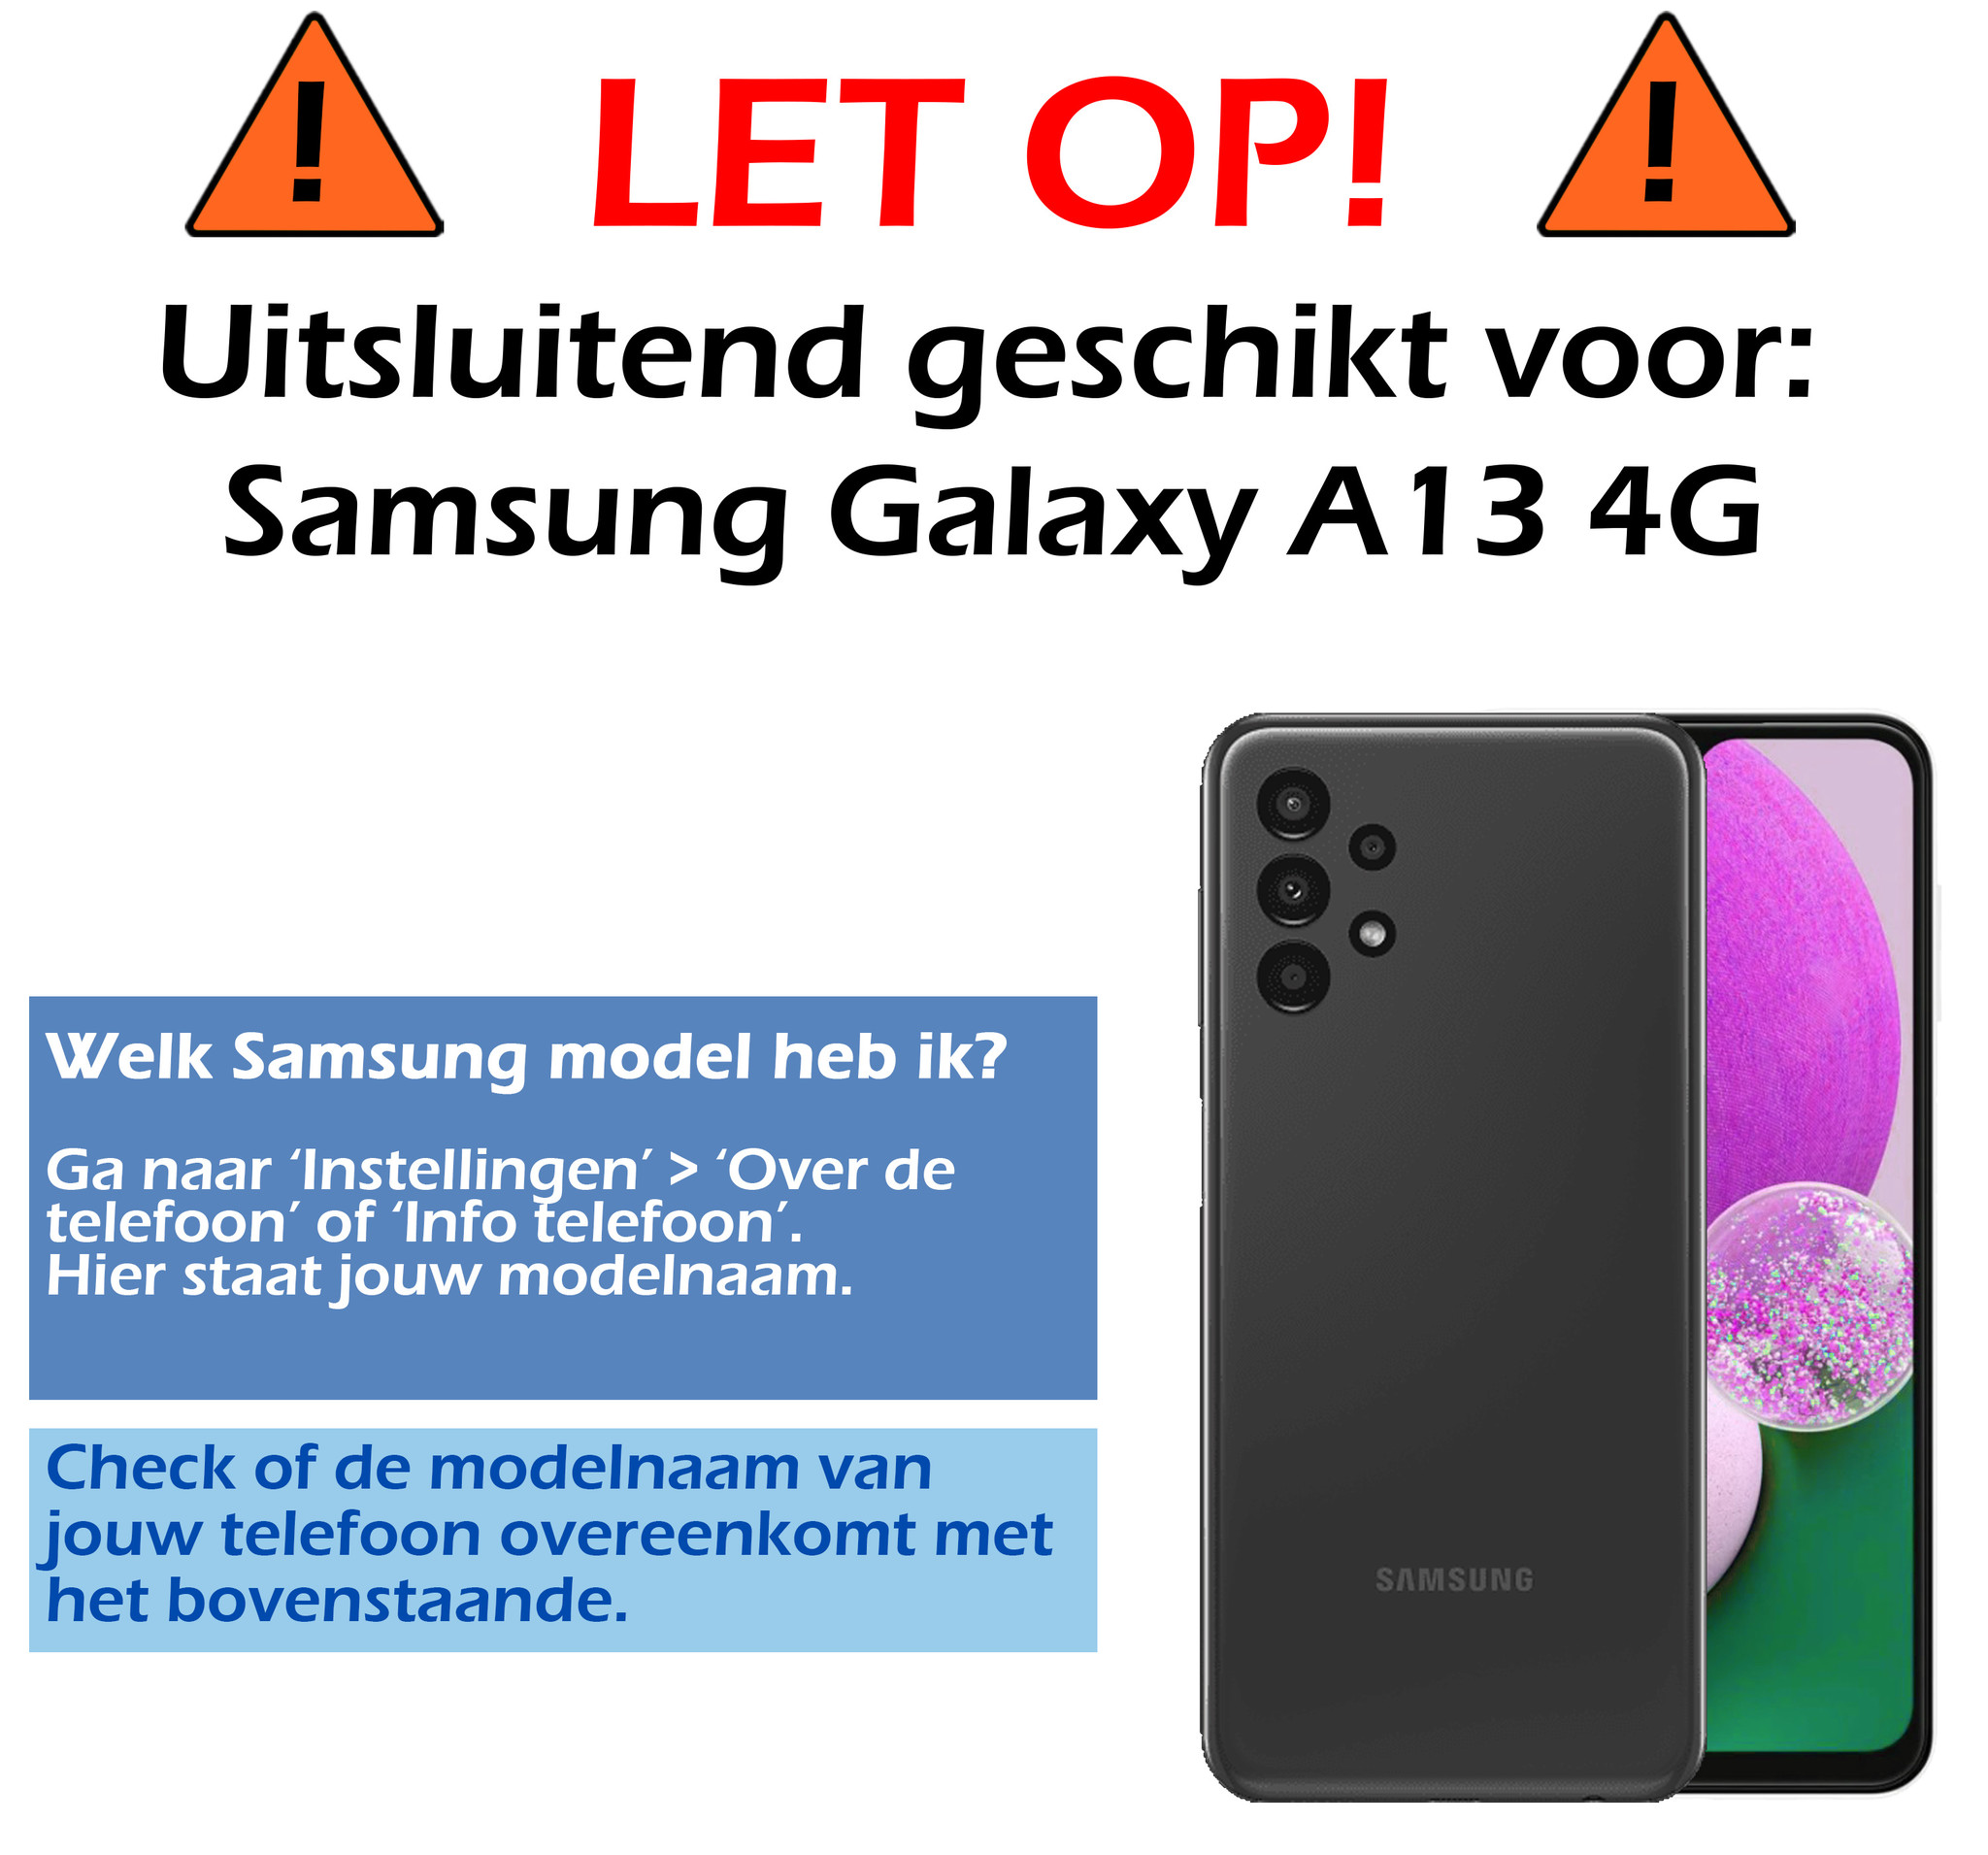 Samsung Galaxy A13 4G Hoesje Siliconen - Samsung Galaxy Galaxy A13 4G Hoesje Zwart Case - Samsung Galaxy Galaxy A13 4G Cover Siliconen Back Cover - Zwart 2 Stuks